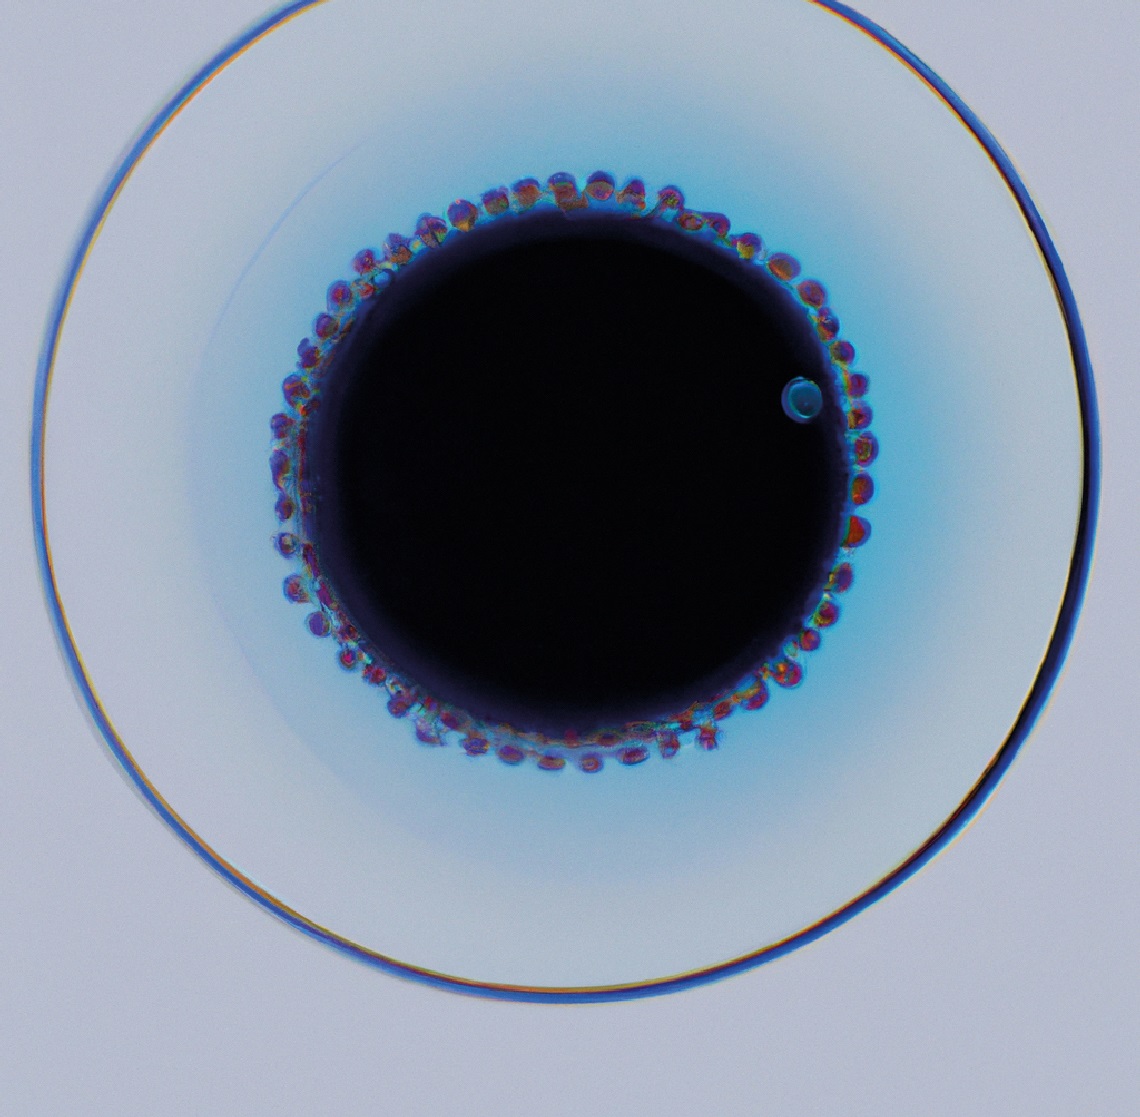 “Imagem manipulada de célula, em estilo minimalista”, em versão do software DALL-E